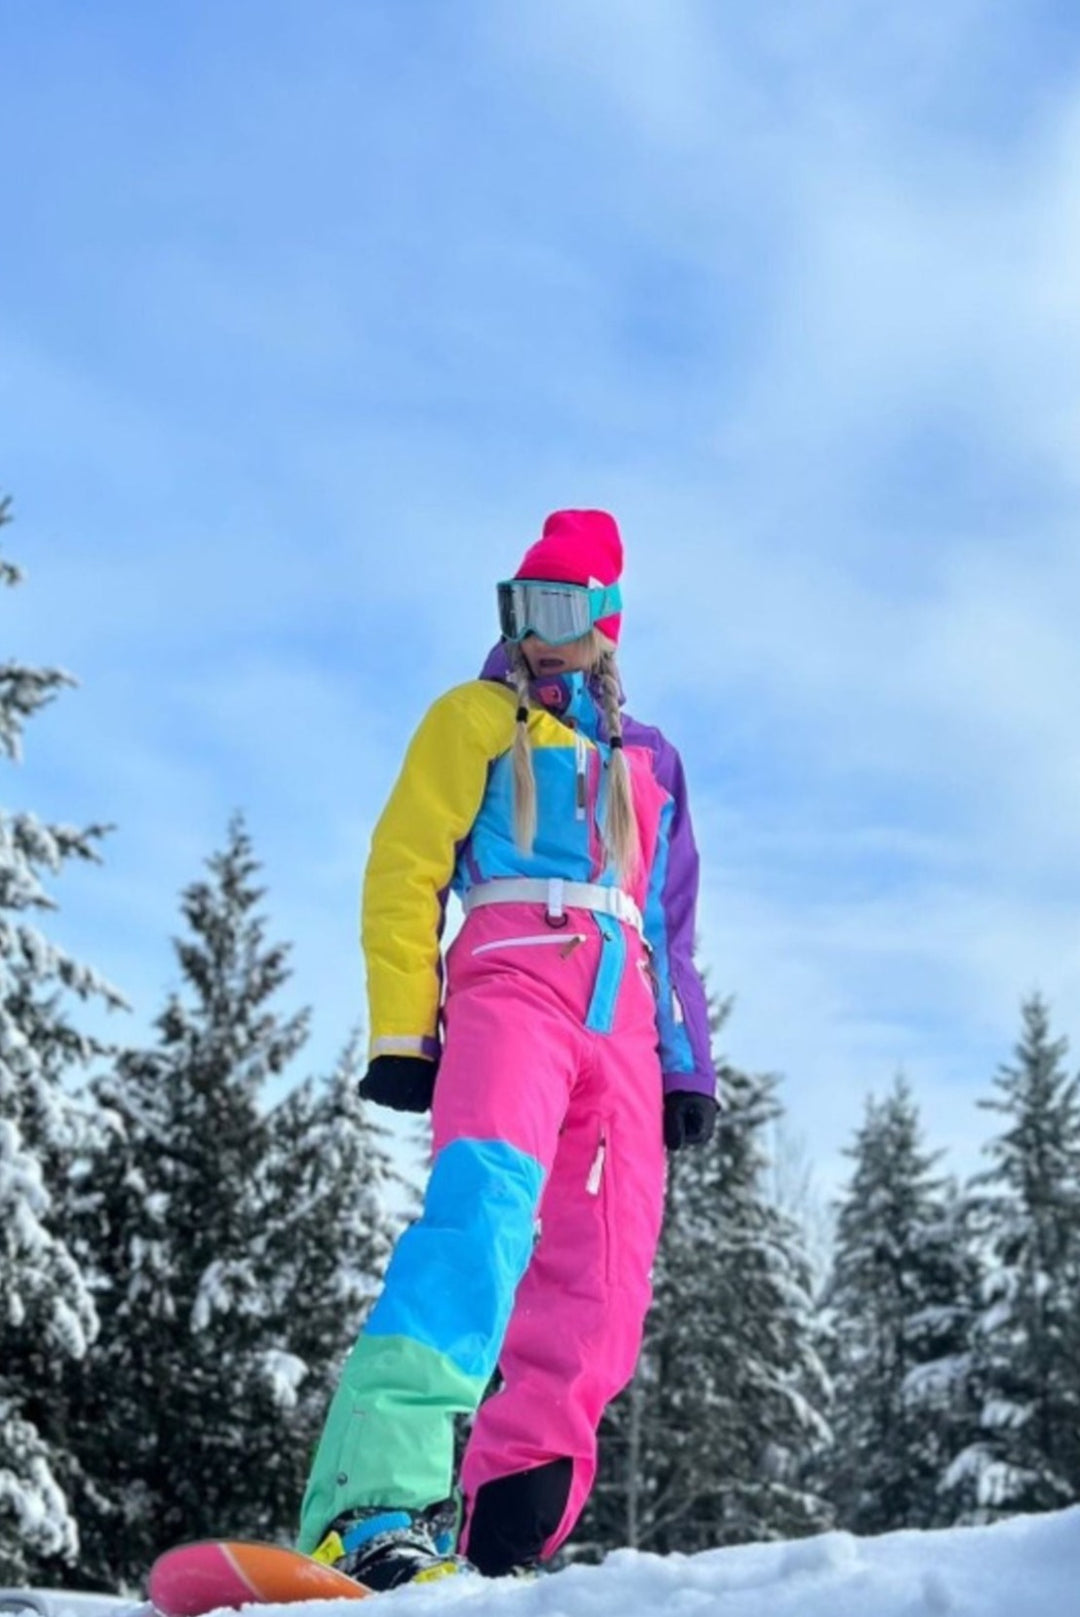 Blue Ski Pants Women Vintage Skiing Trousers Ski Snowboard Snow Men Ski Bib  Size XS Snow Skiing Clothes Retro Sport Winter Holidays Clothing 